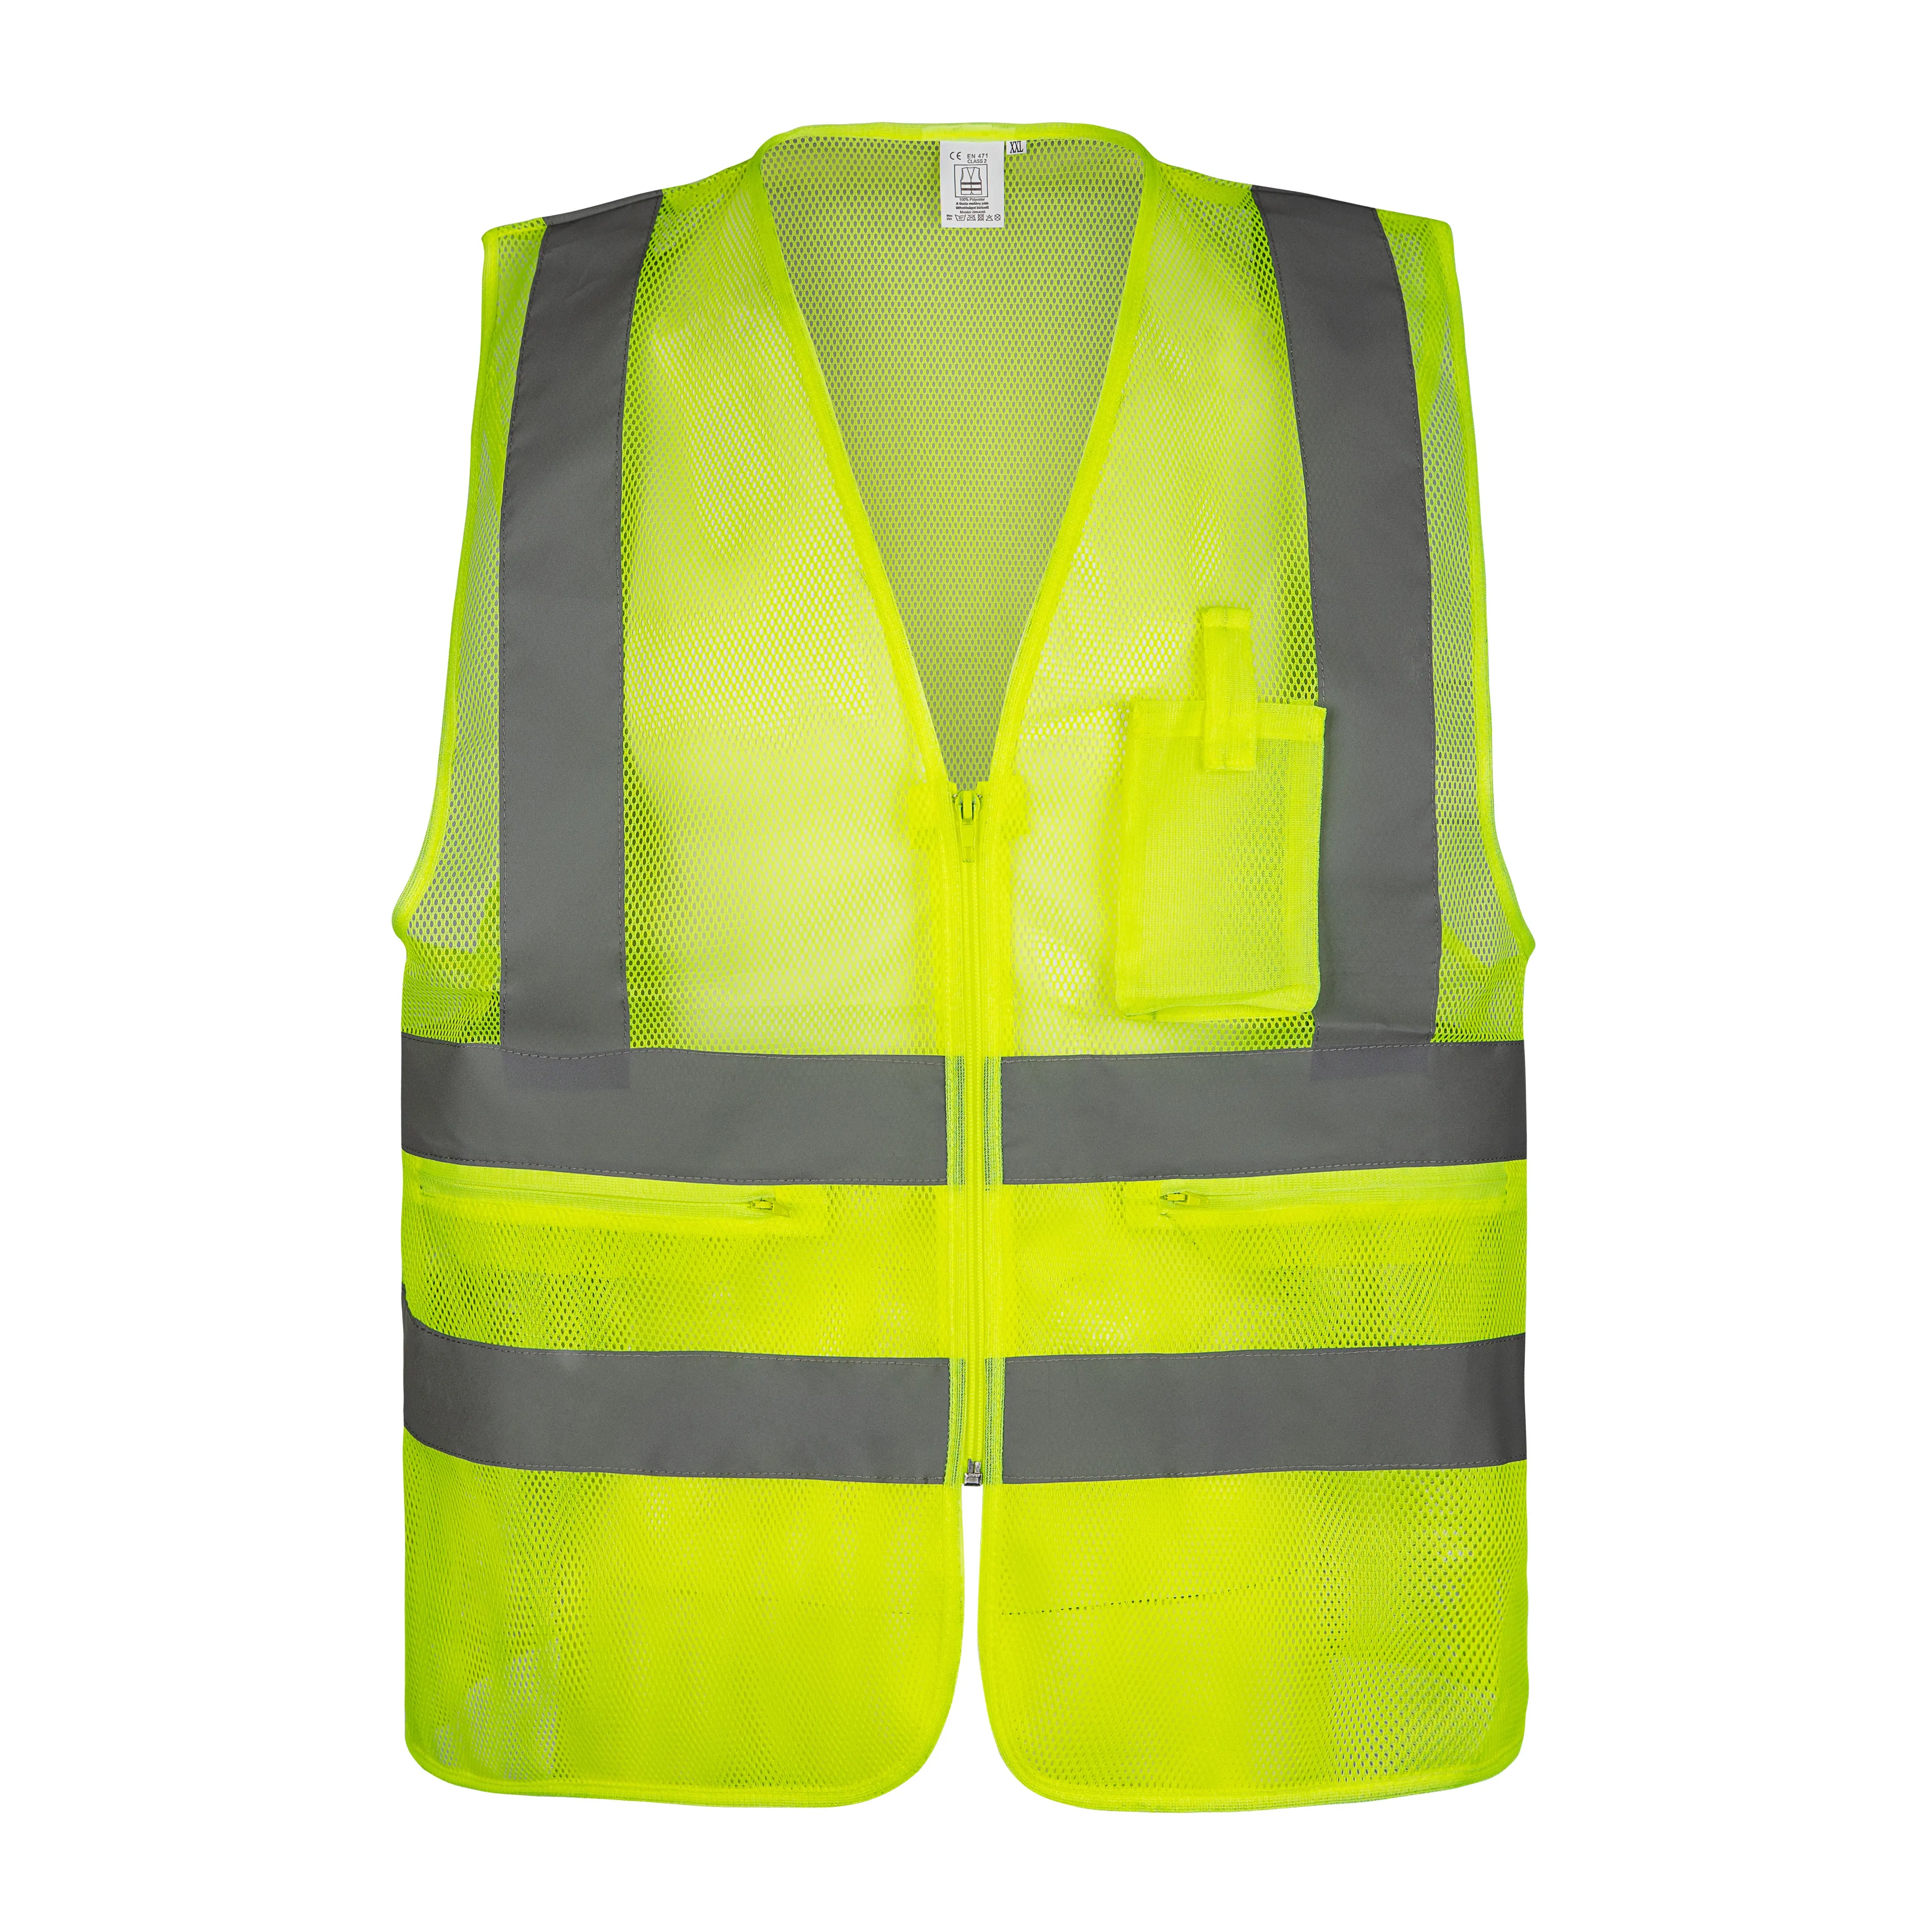 safety vest custom logo 120G polyester mesh multi pockets high visibility safety vest hi vis workwear for men korean markets